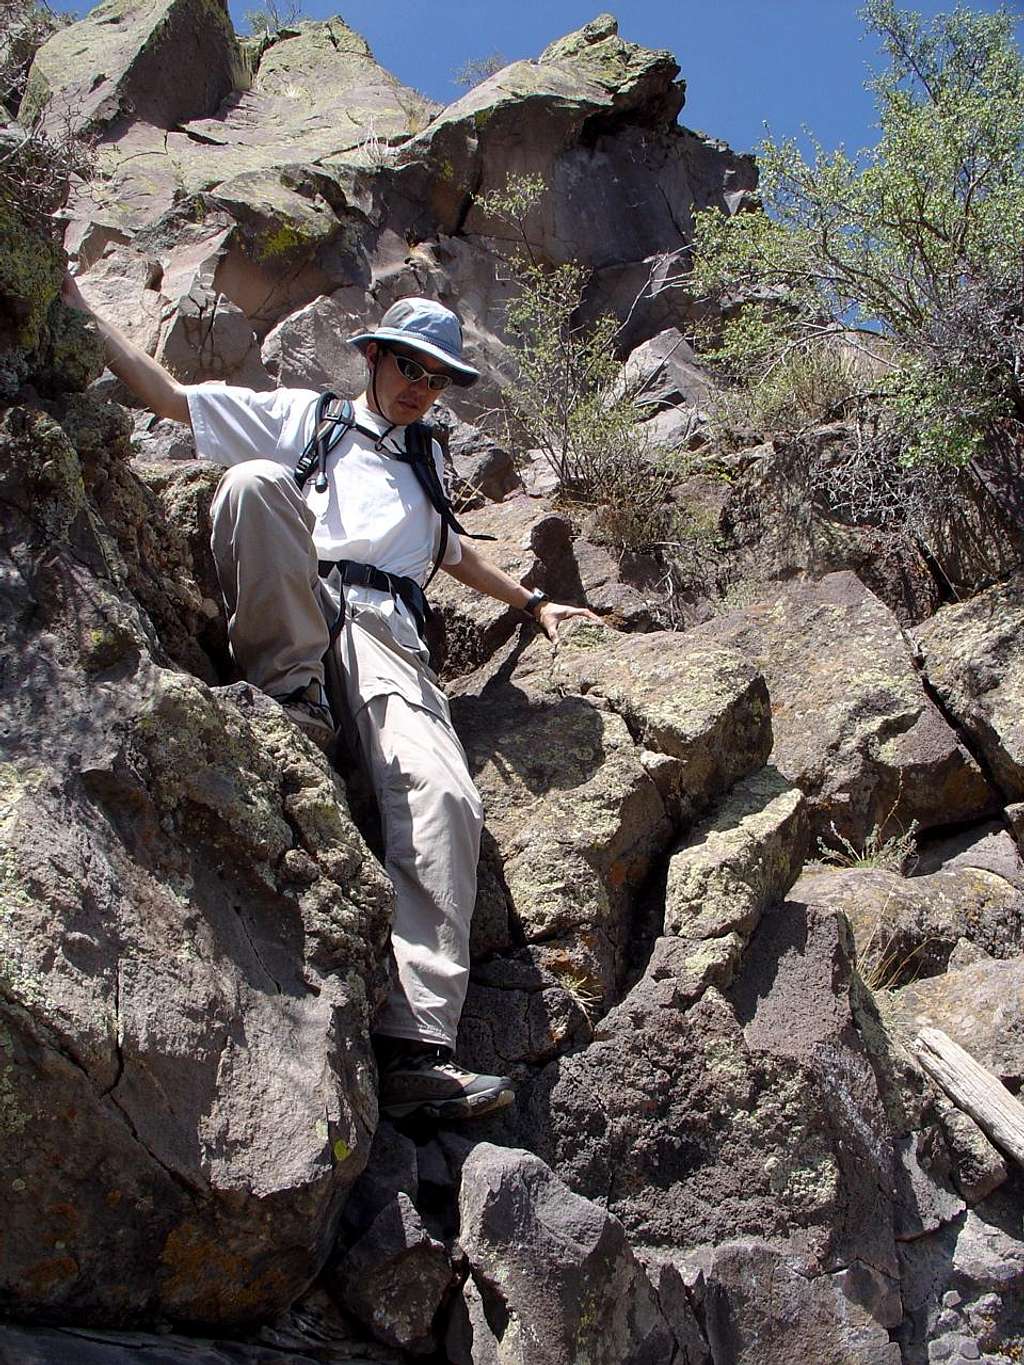 Scott descending the crux on Cerro Pedernal